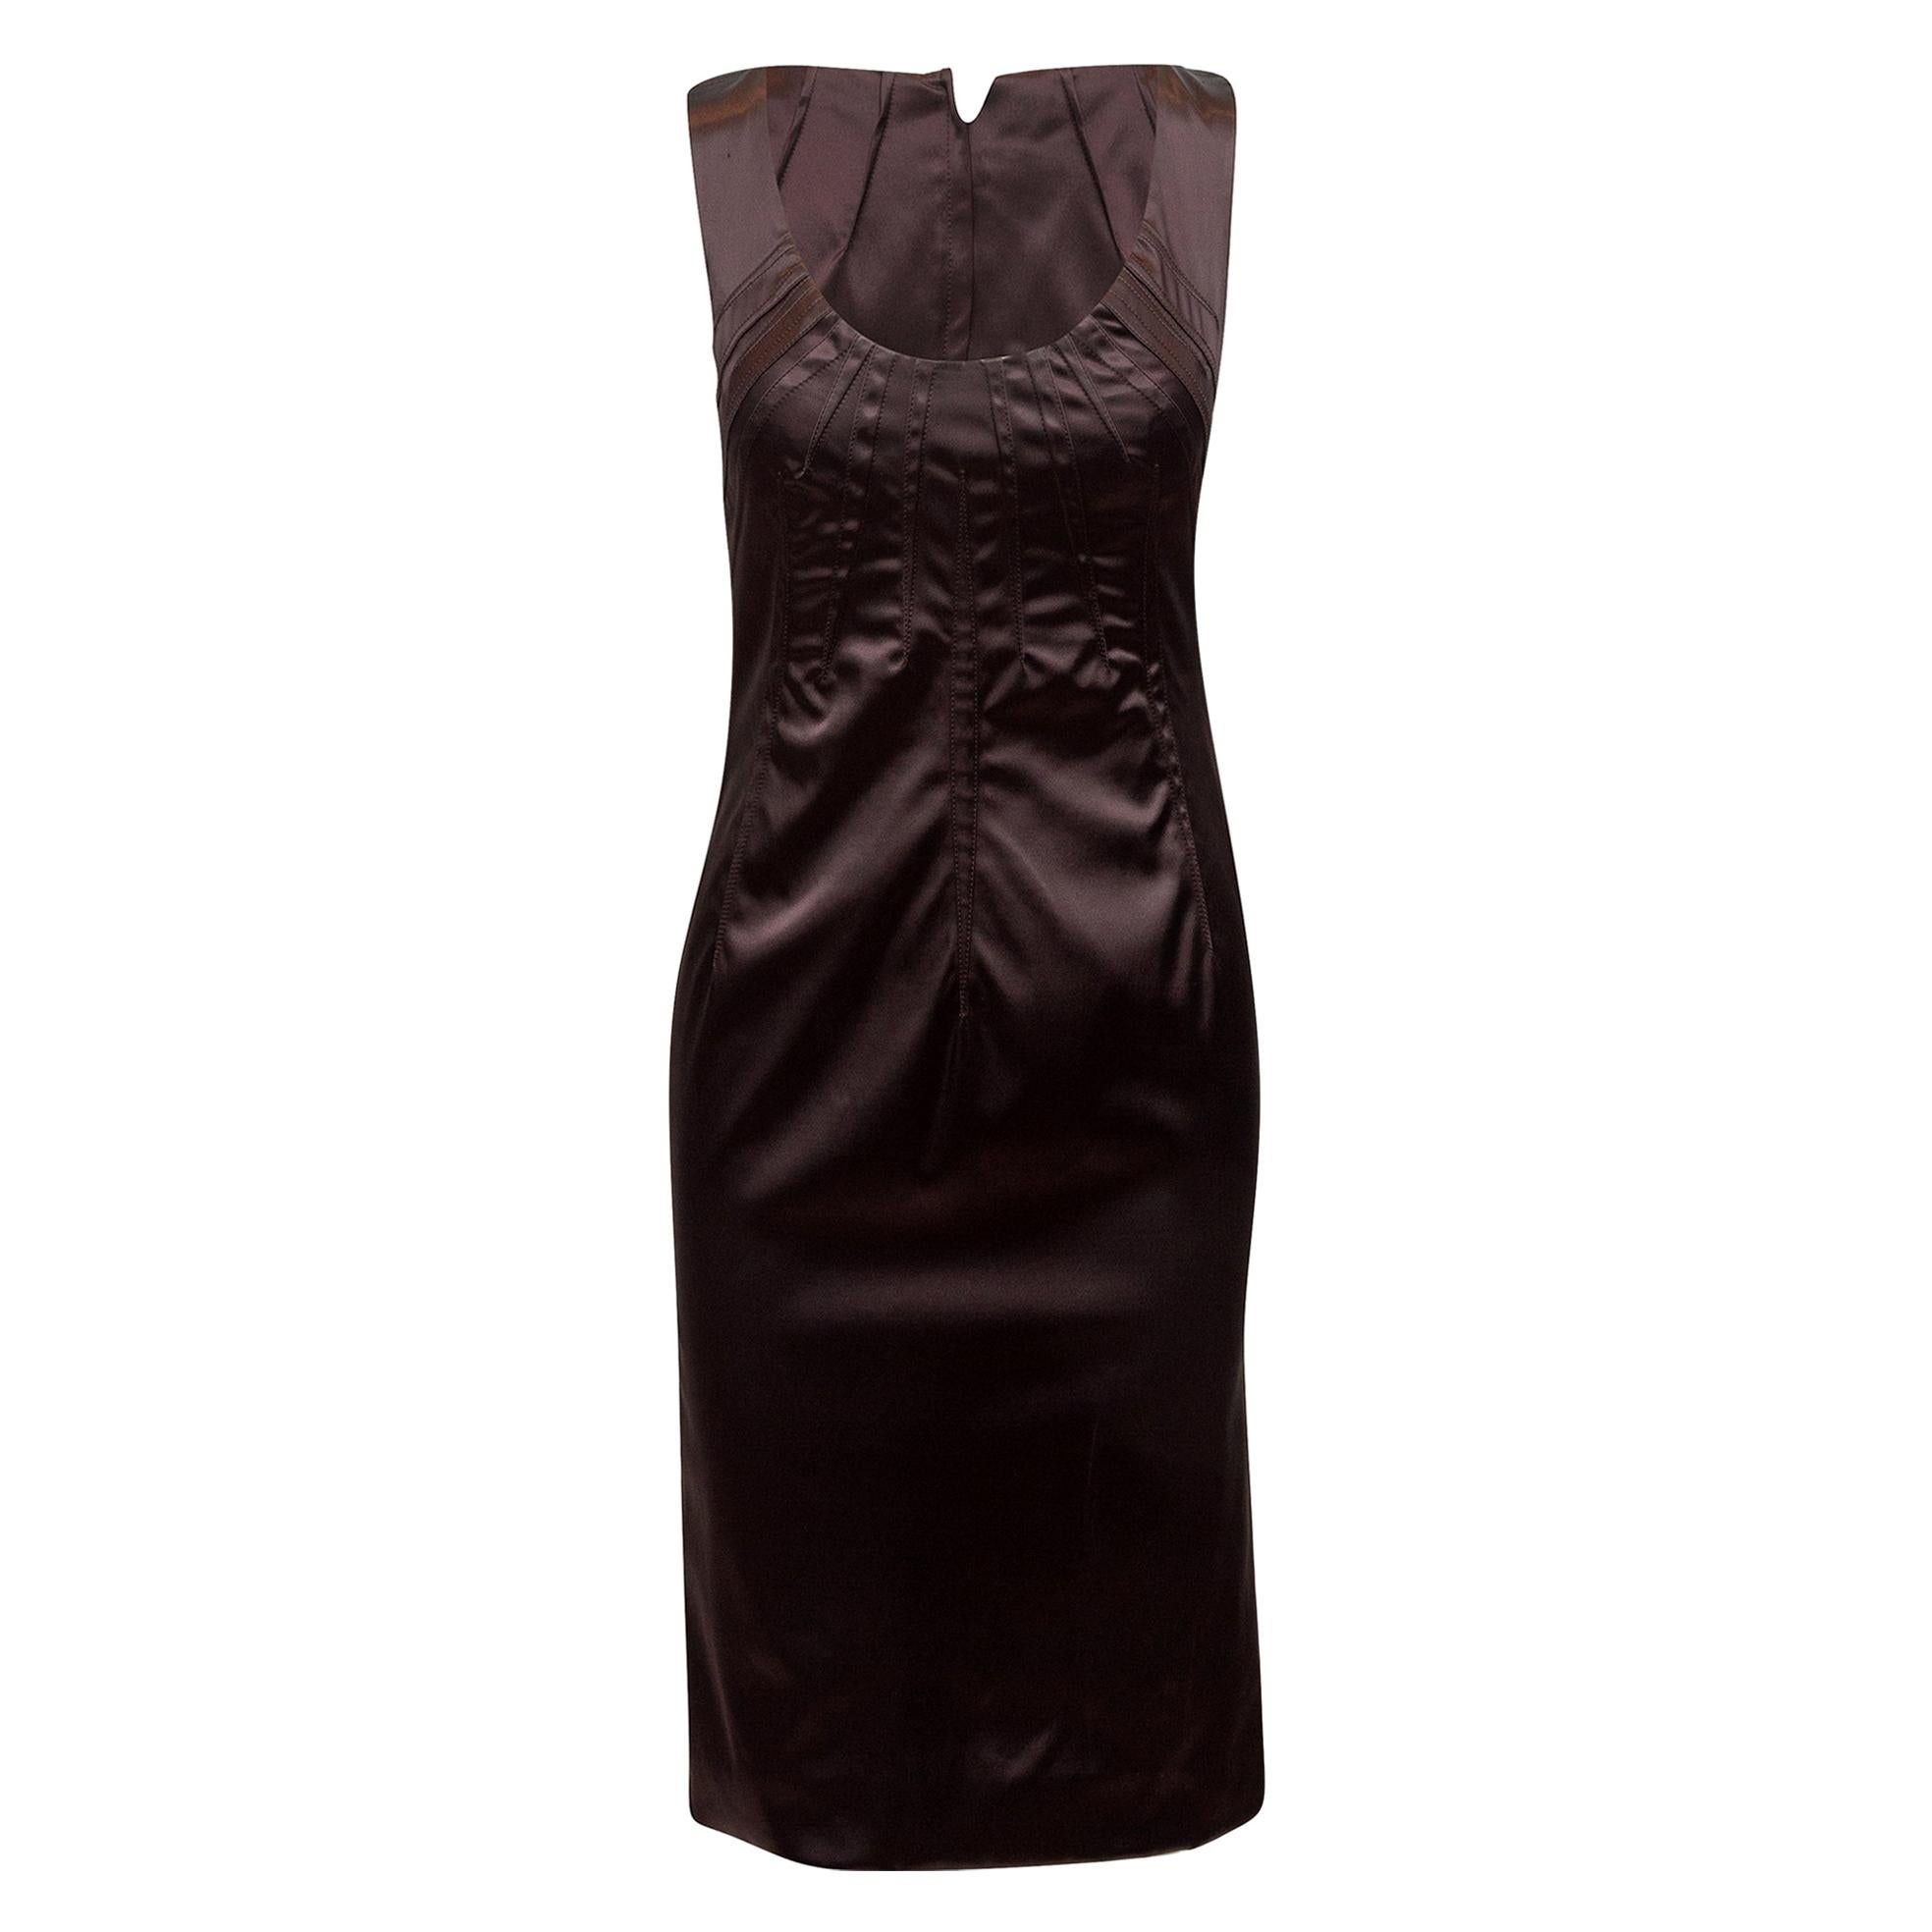 Dolce & Gabbana Dark Brown Satin Sleeveless Dress